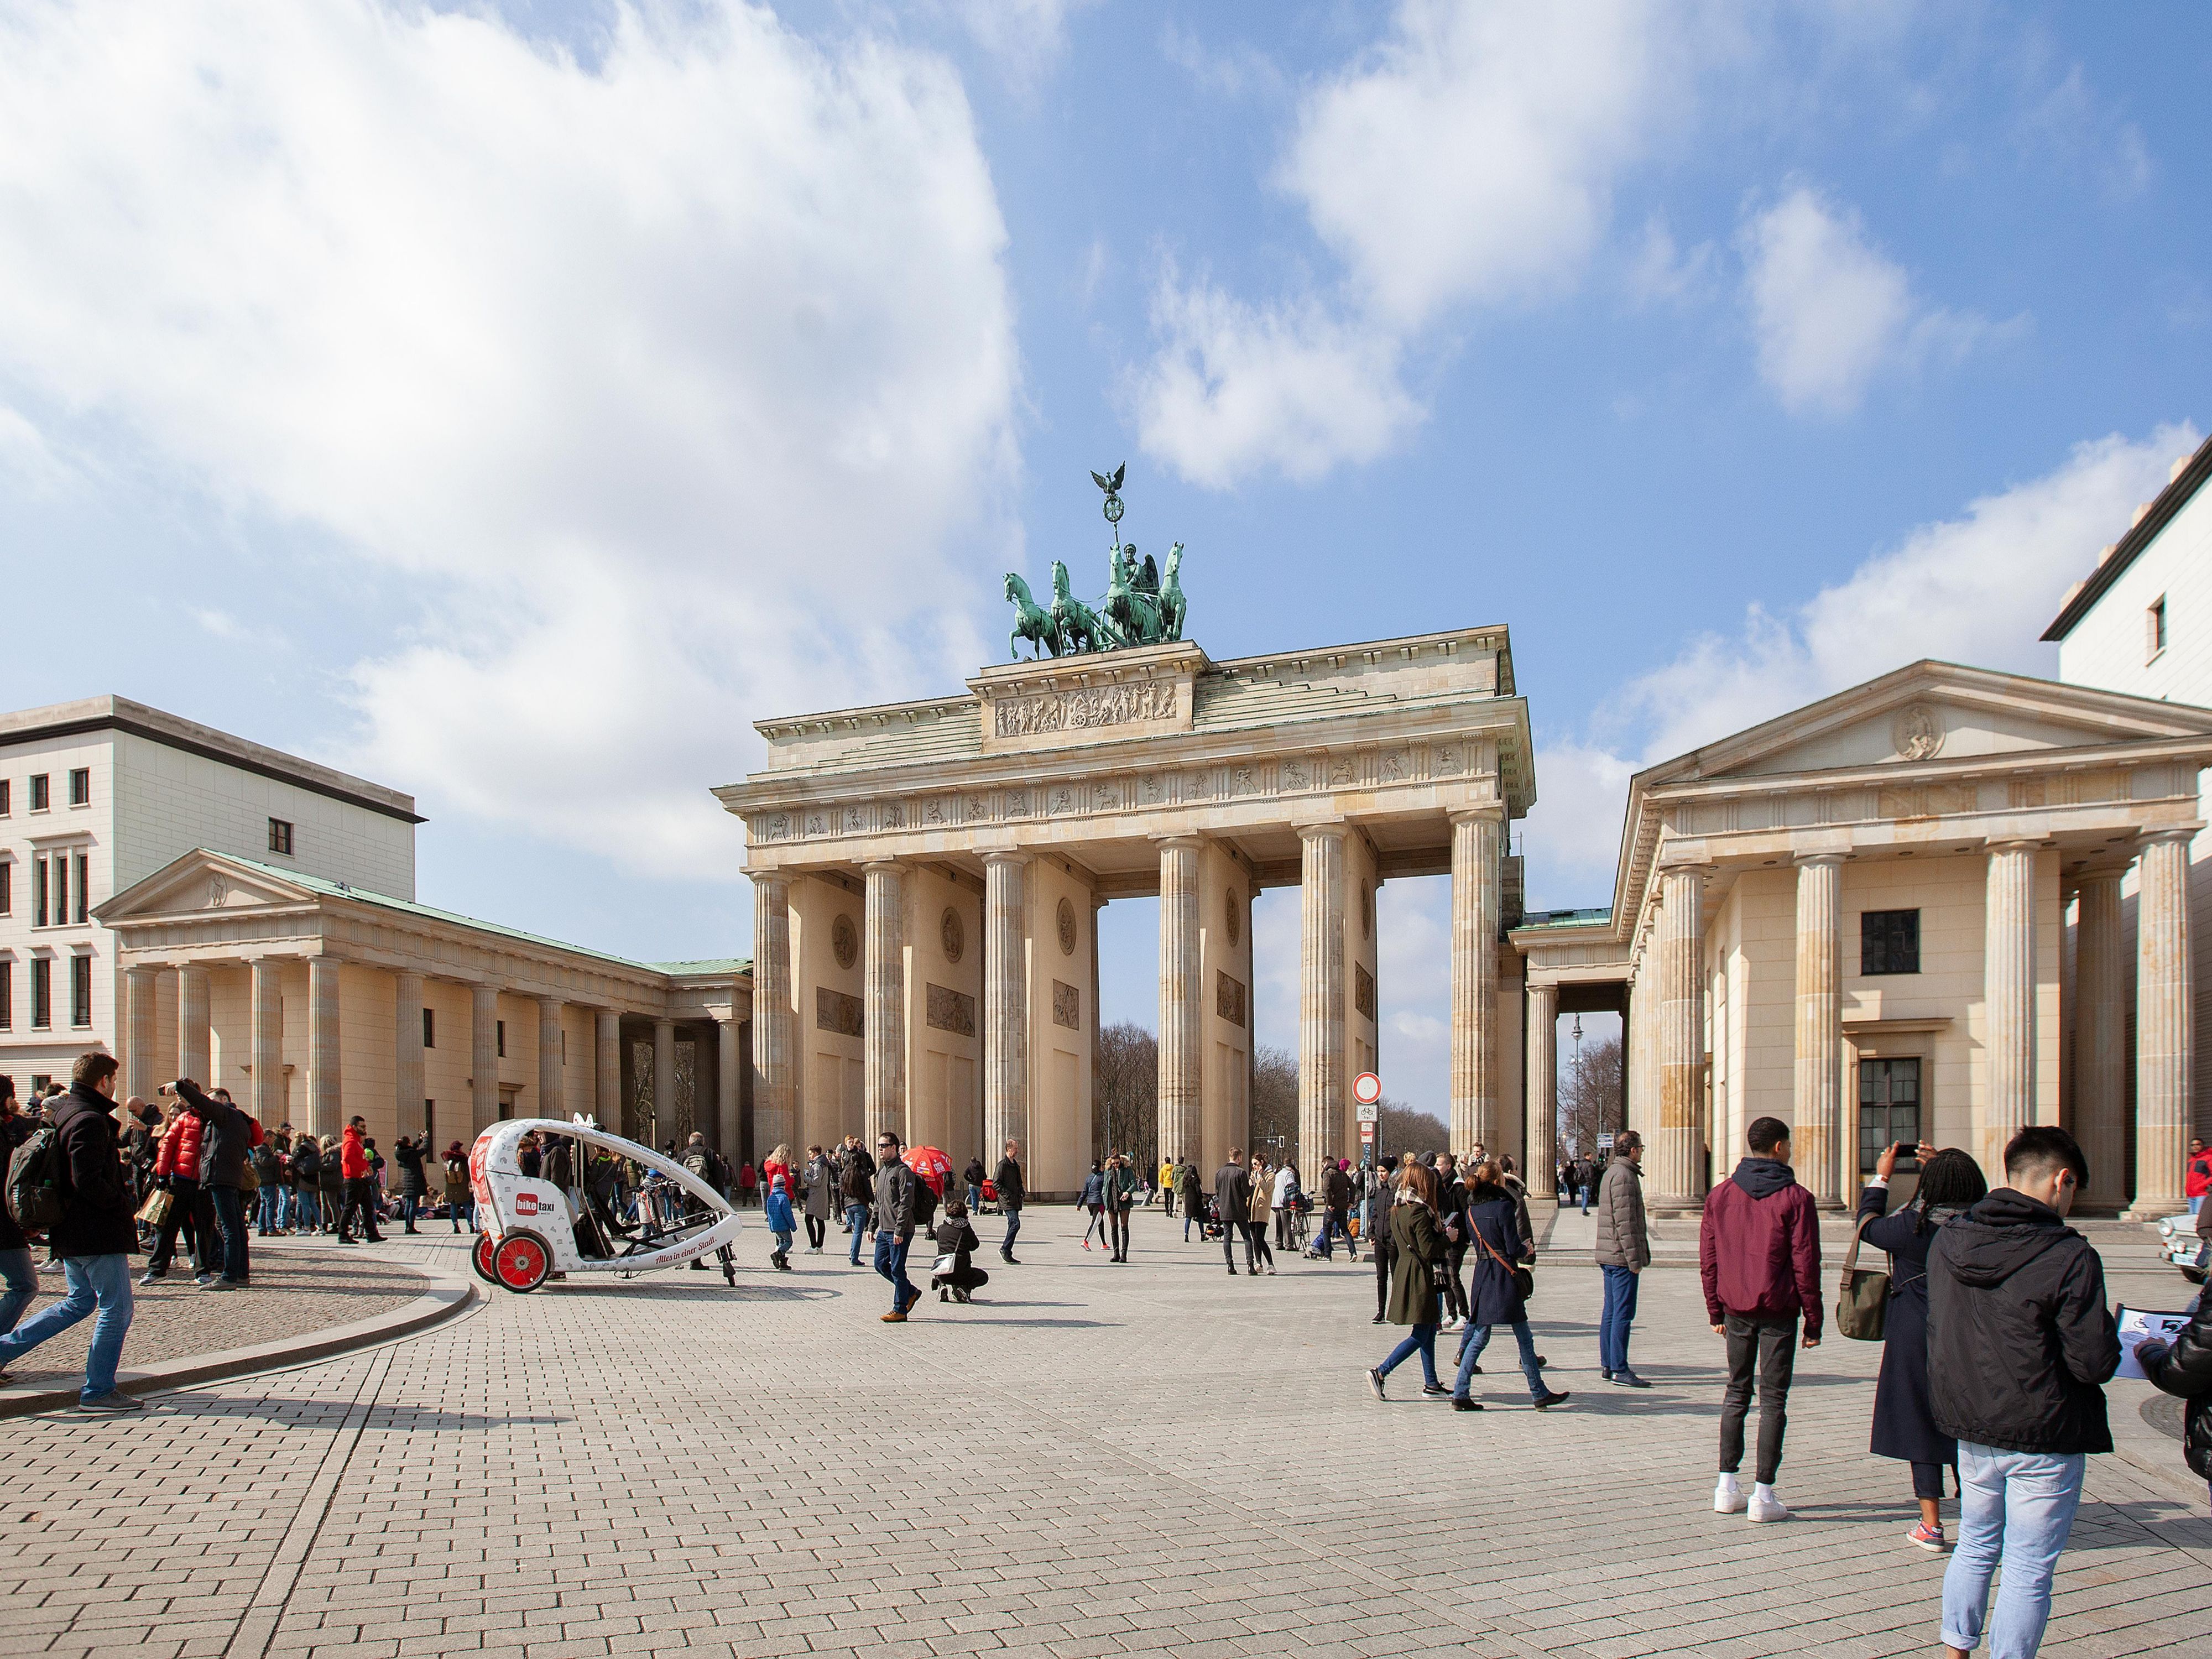 The 18th-century Brandenburg Gate, in Berlin's Pariser Platz.